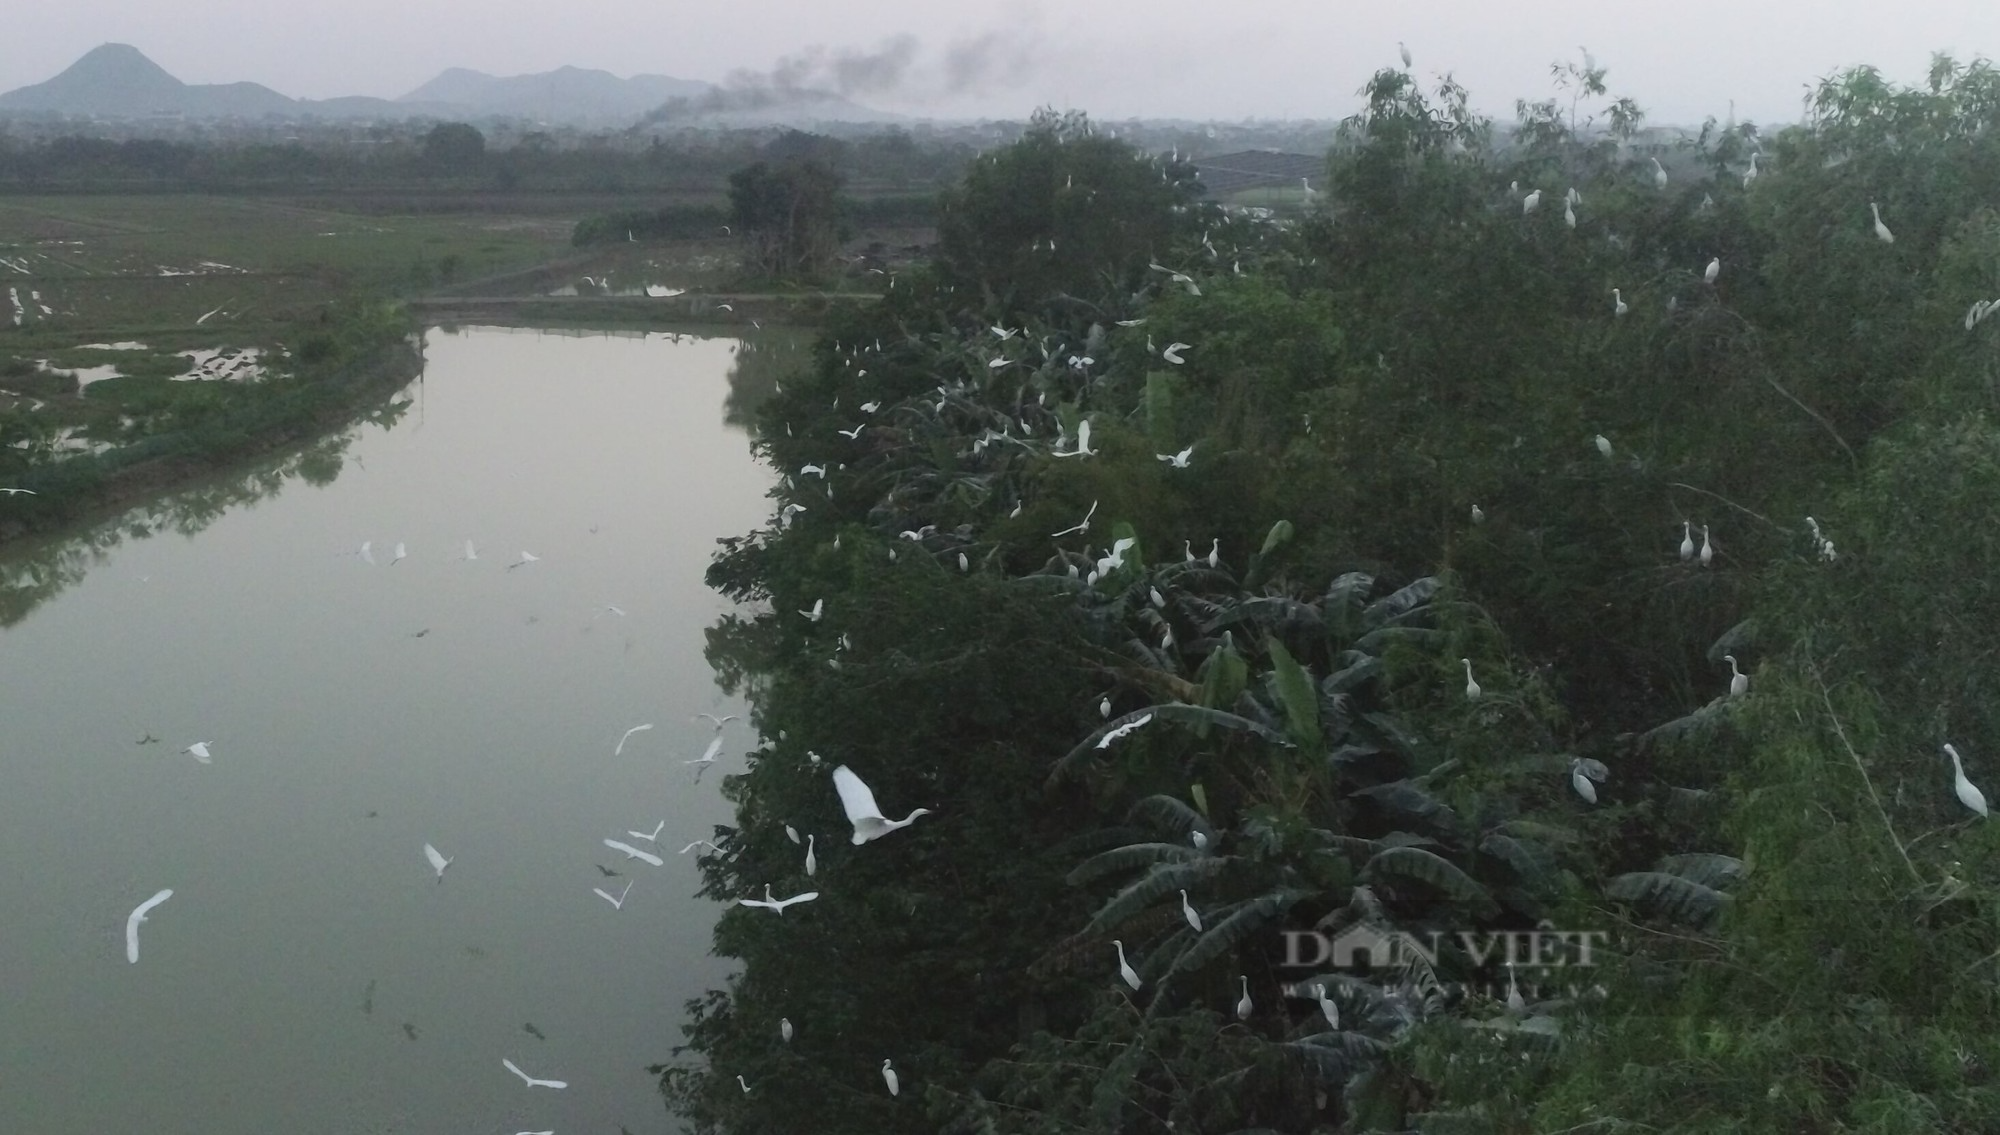 Kỳ lạ: Đàn cò hàng ngàn con bay trắng trời, bất ngờ quần tụ tại một hòn đảo nhân tạo ở Nghệ An - Ảnh 4.